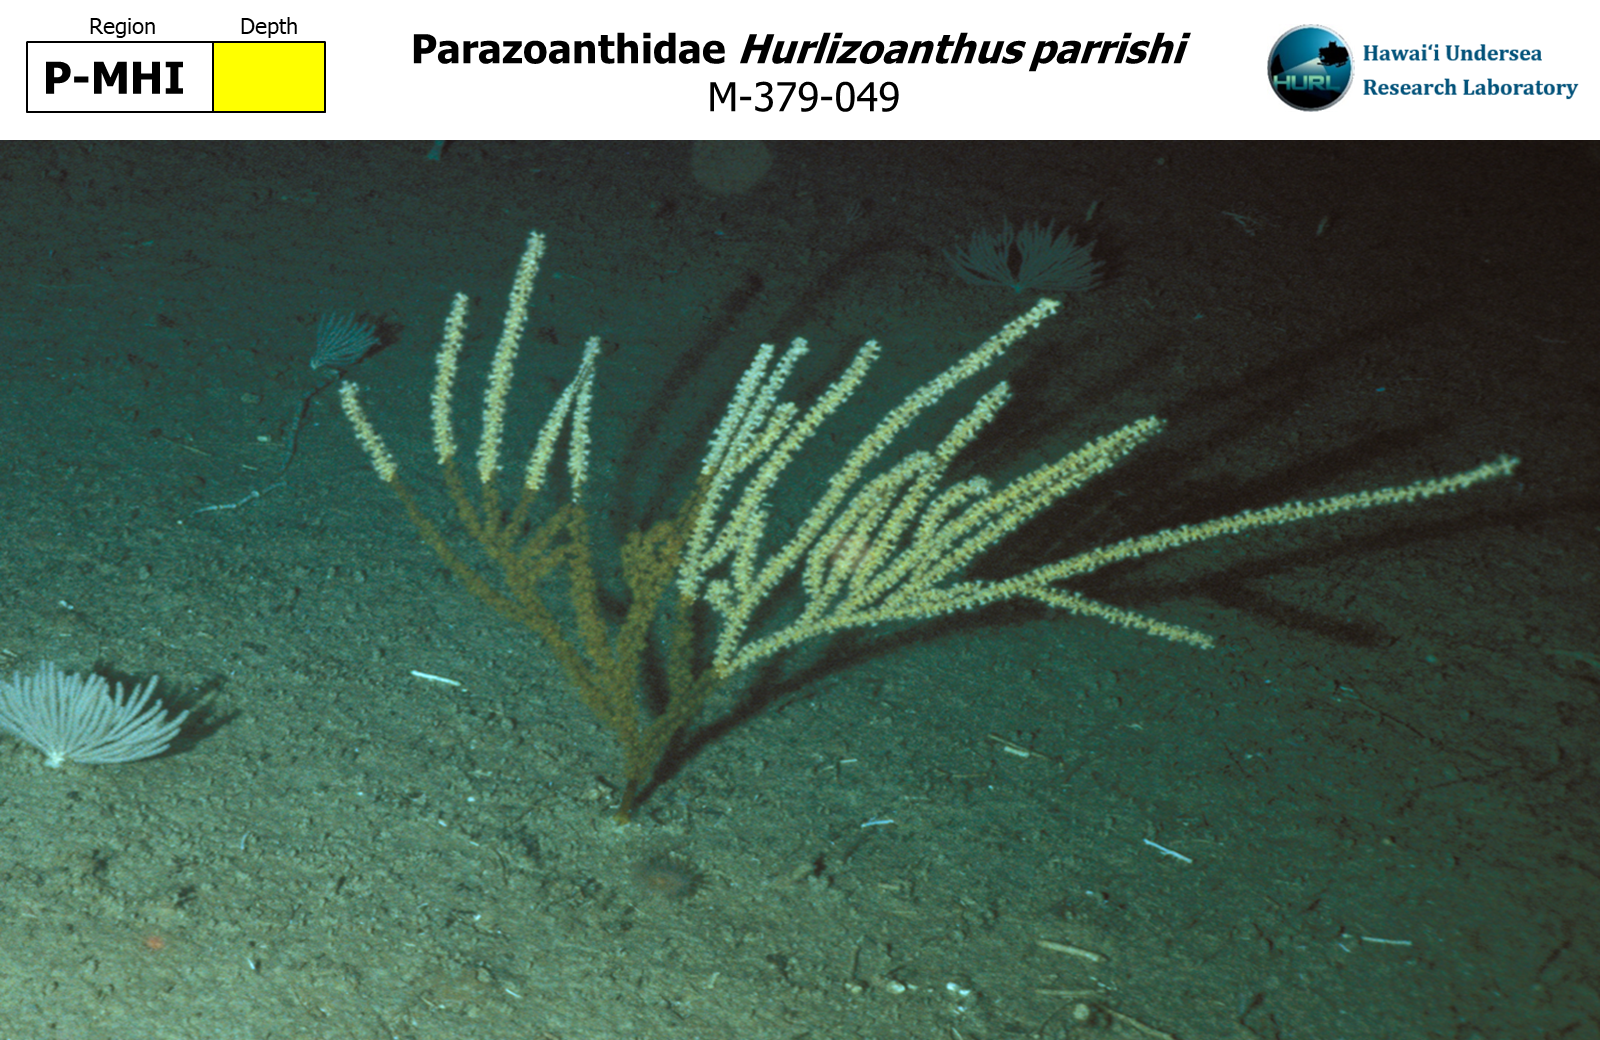 Hurlizoanthus parrishi,M-379-049,P-MHI,Y,M-379